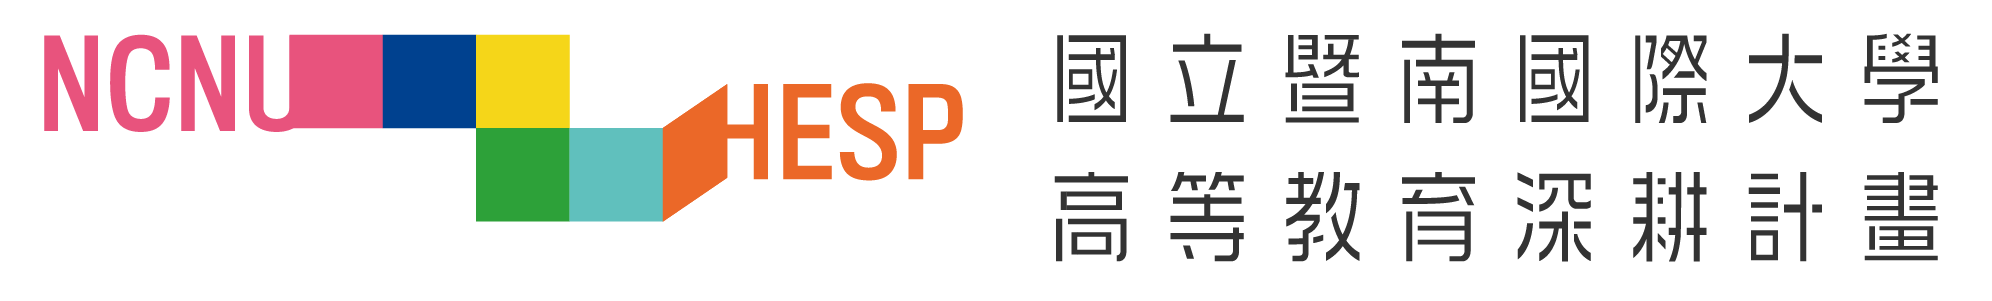 Logo_png